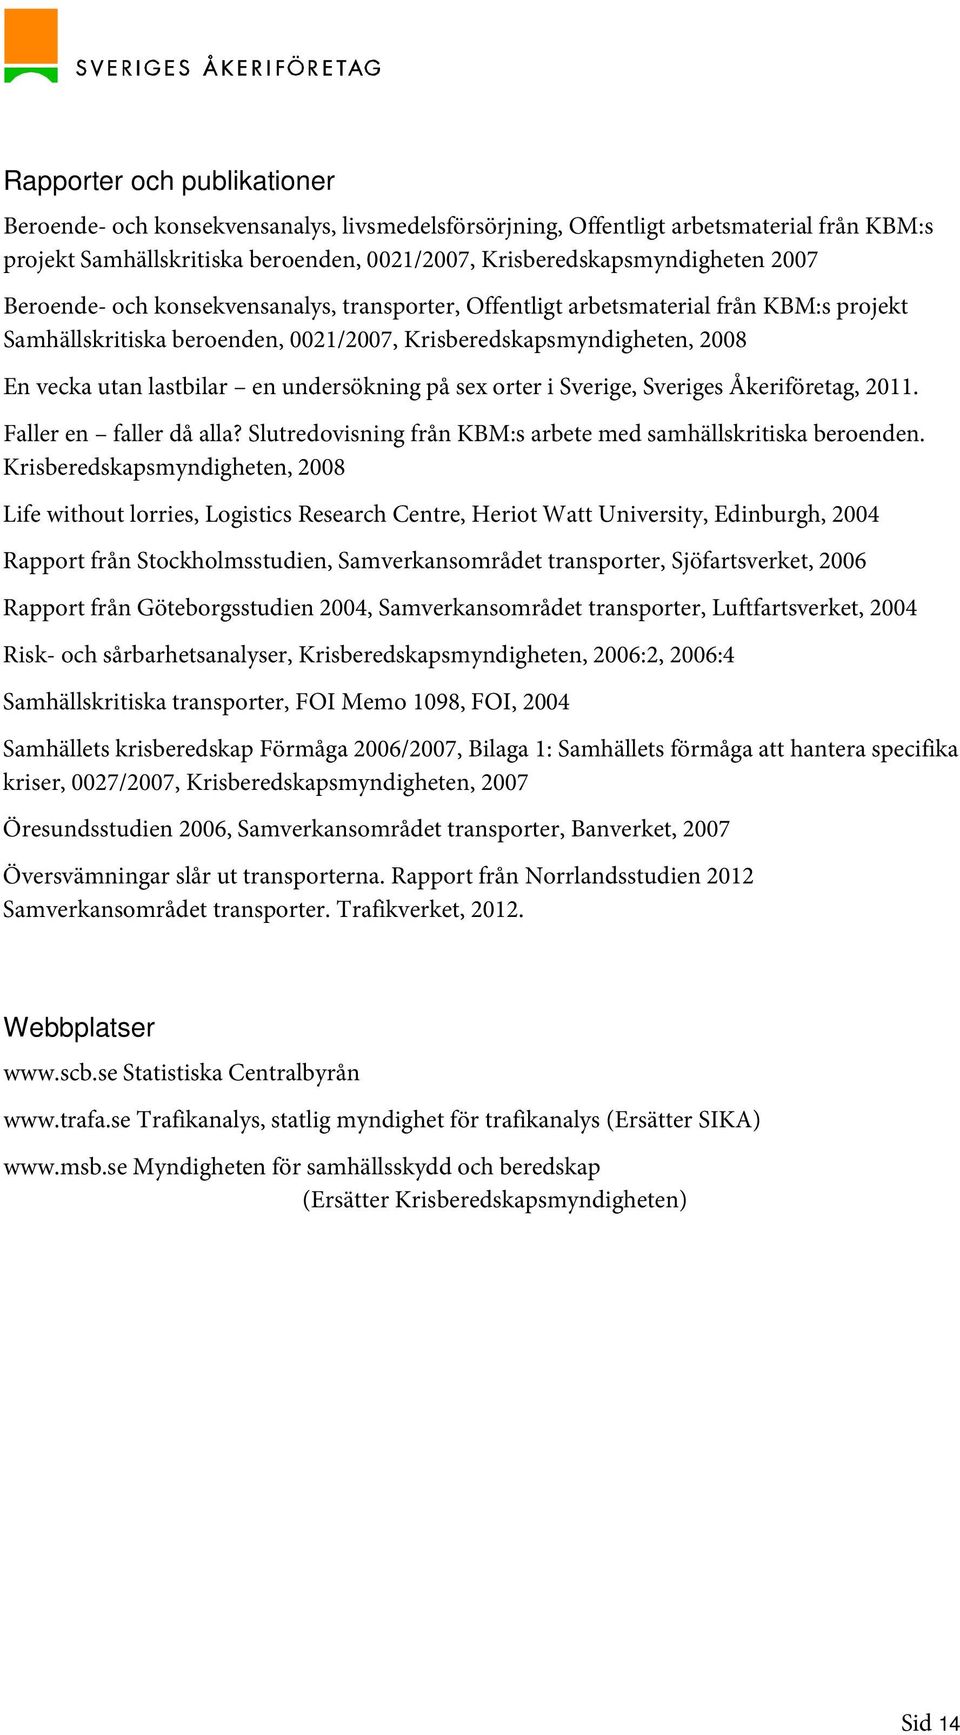 undersökning på sex orter i Sverige, Sveriges Åkeriföretag, 2011. Faller en faller då alla? Slutredovisning från KBM:s arbete med samhällskritiska beroenden.